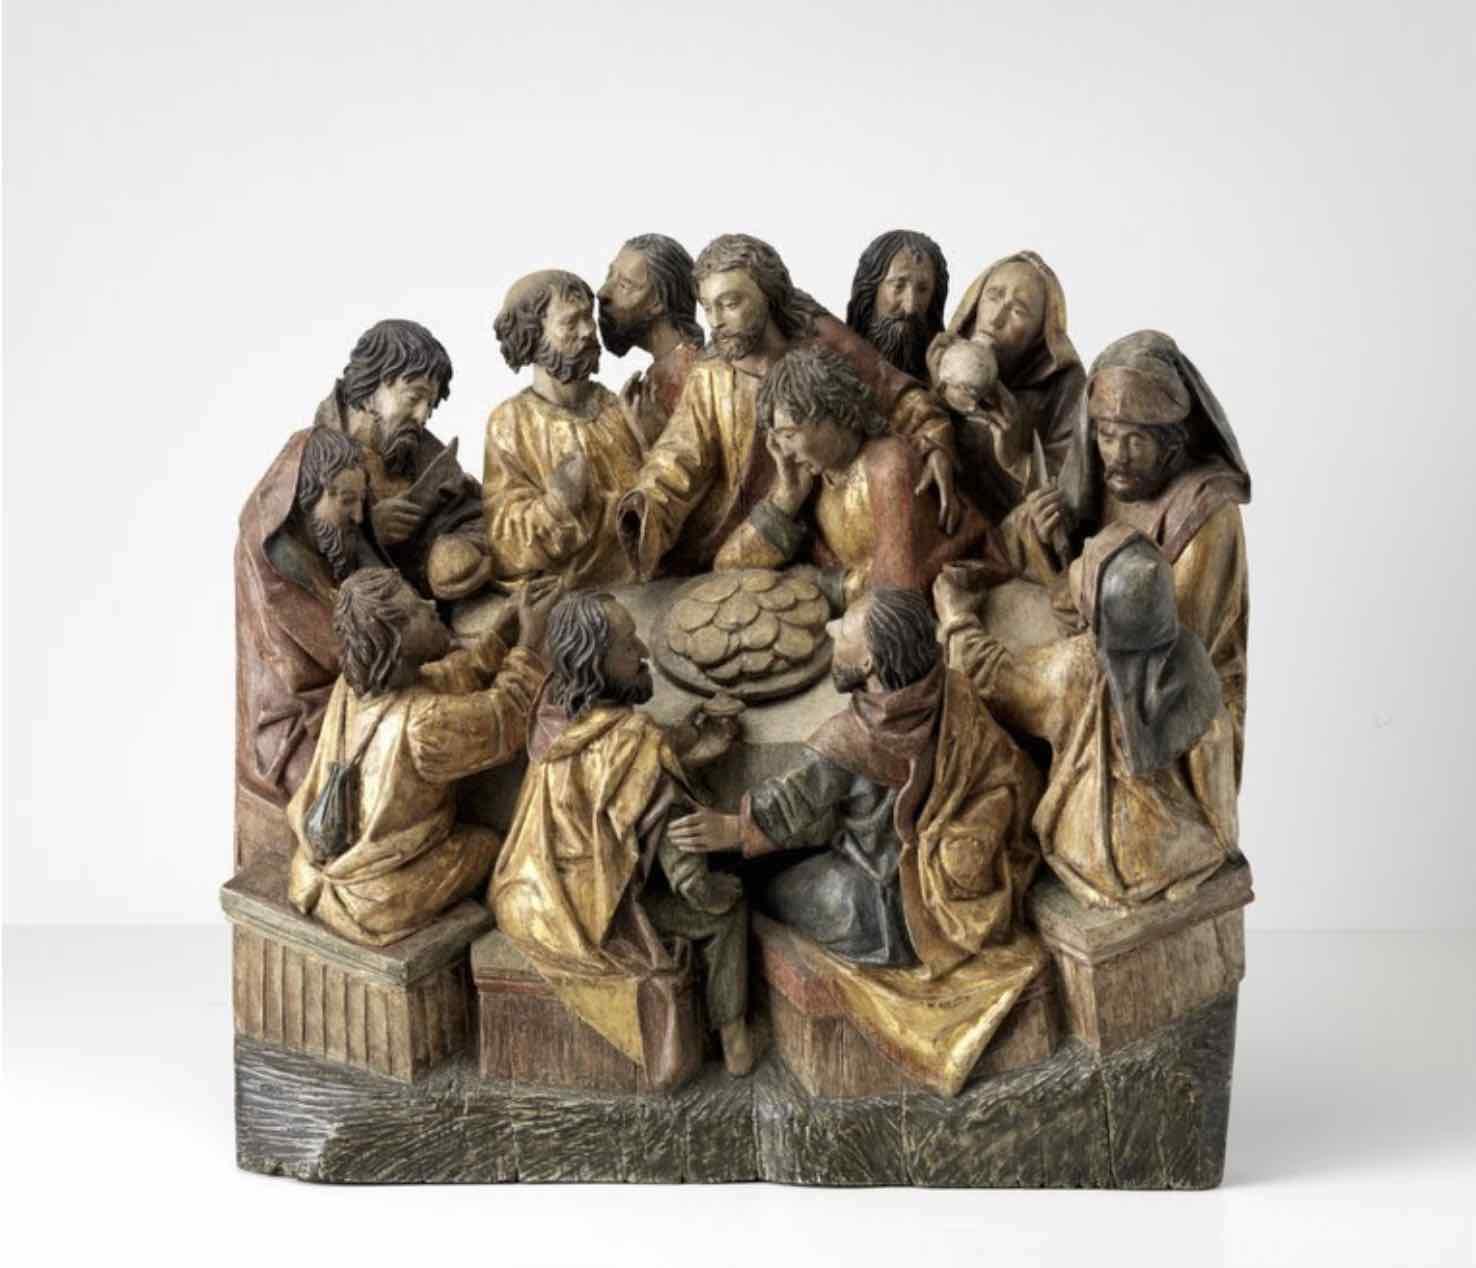 Adriaen van Wesel, The Last Supper (Het Laatste Avondmaal), c.1480 - 1490.